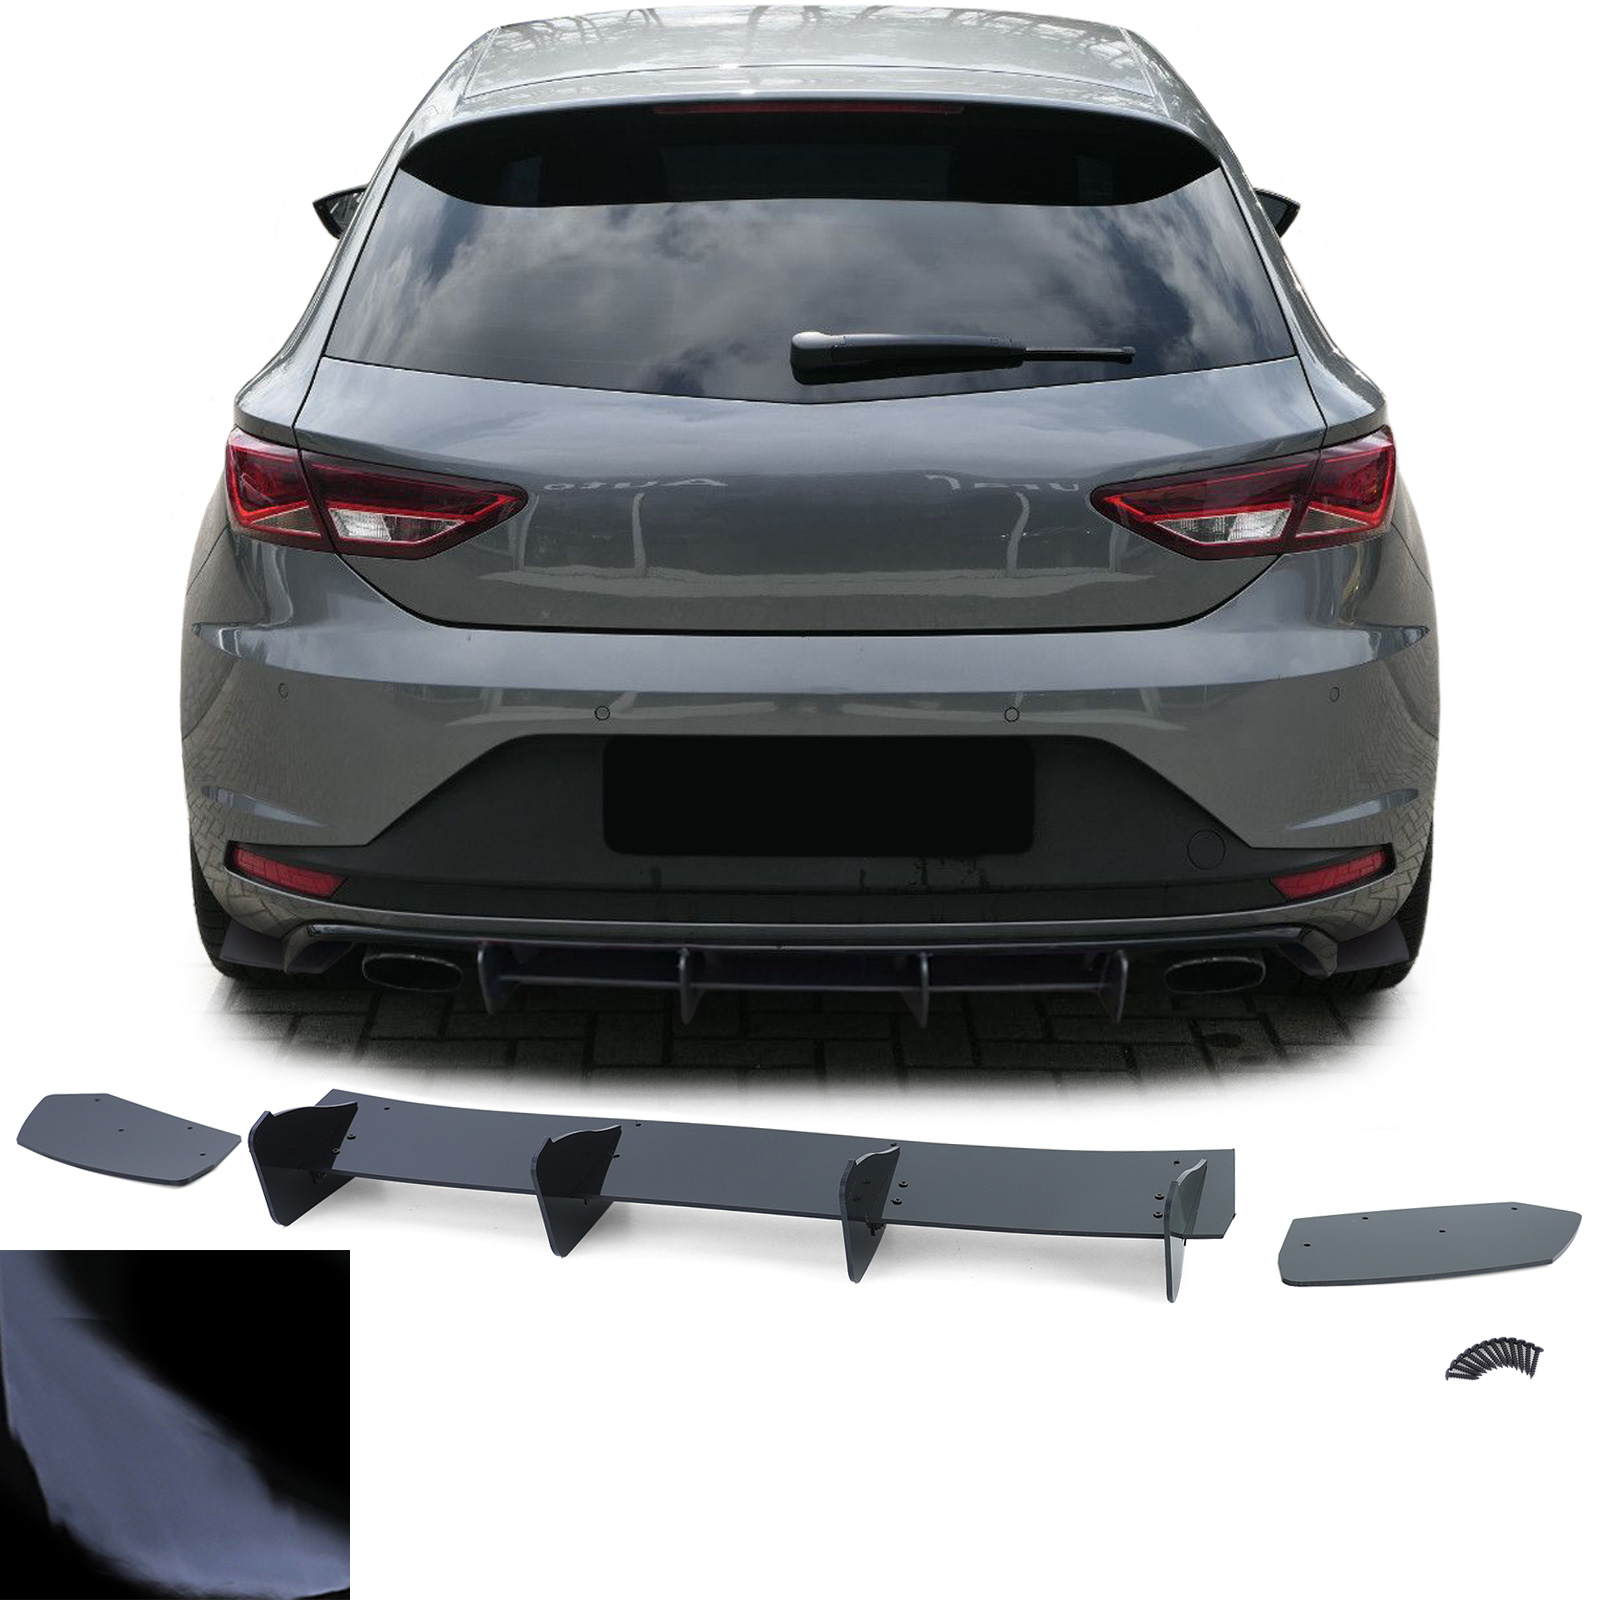  Jupe arrière 'Diffuseur' compatible avec Seat Leon 5F FR  SC/5-portes 2013-2017 excl. ST/Cupra (ABS noir luisant)